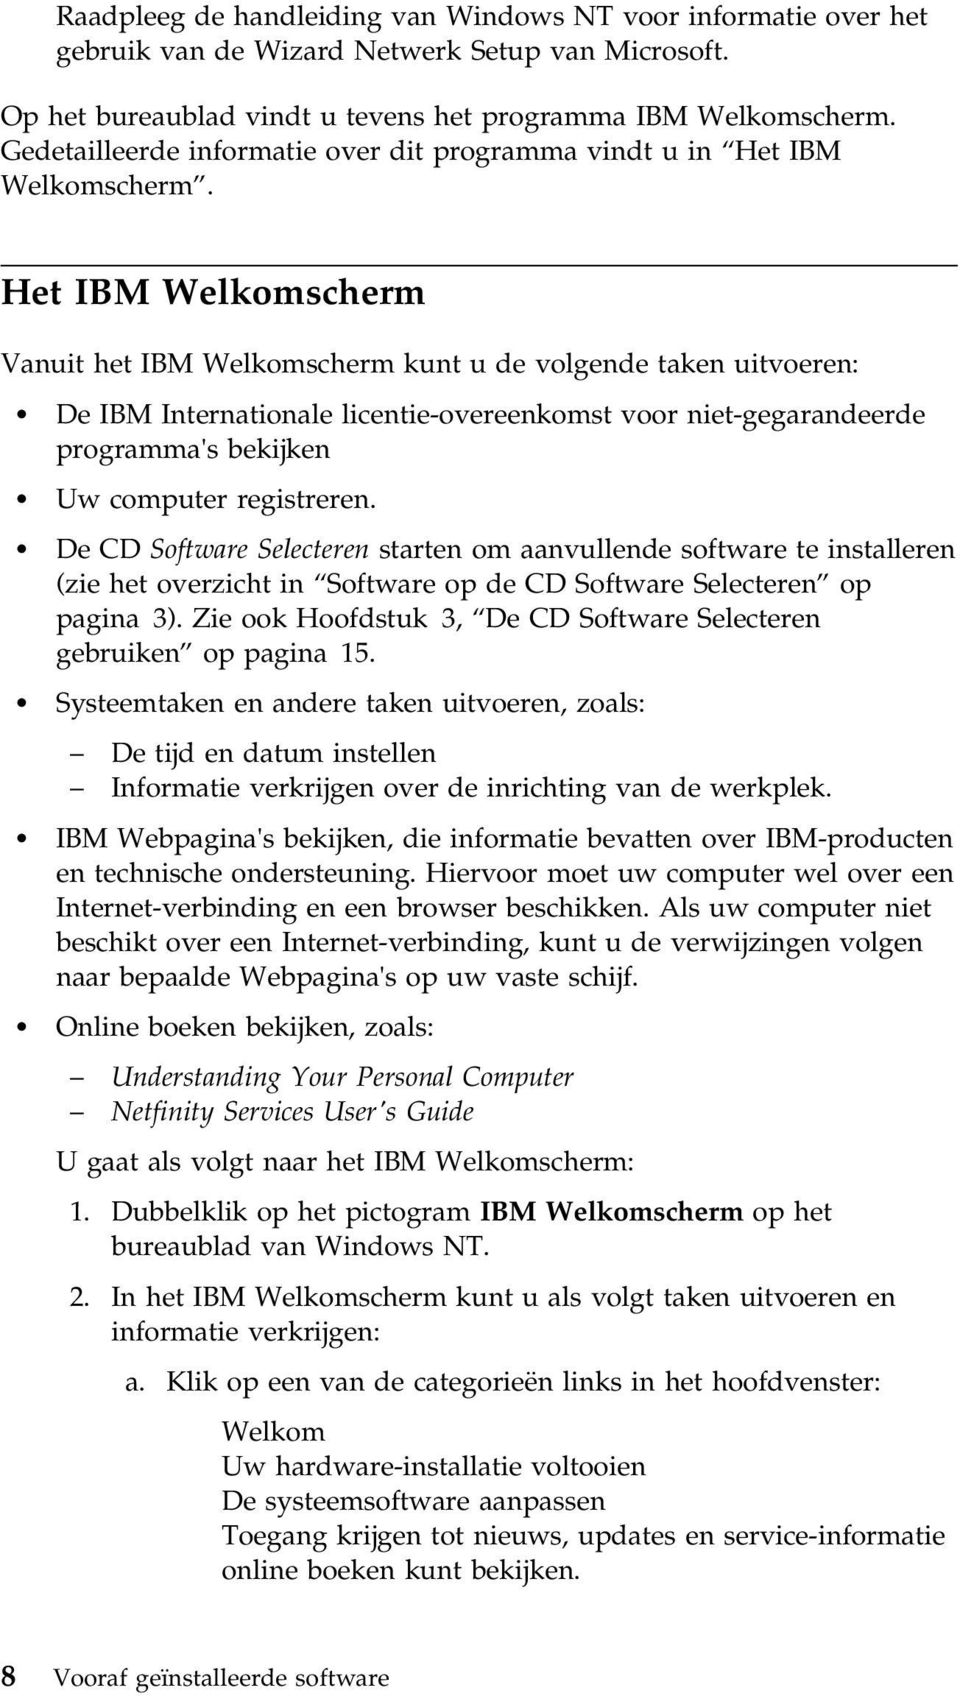 Het IBM Welkomscherm Vanuit het IBM Welkomscherm kunt u de volgende taken uitvoeren: De IBM Internationale licentie-overeenkomst voor niet-gegarandeerde programma's bekijken Uw computer registreren.